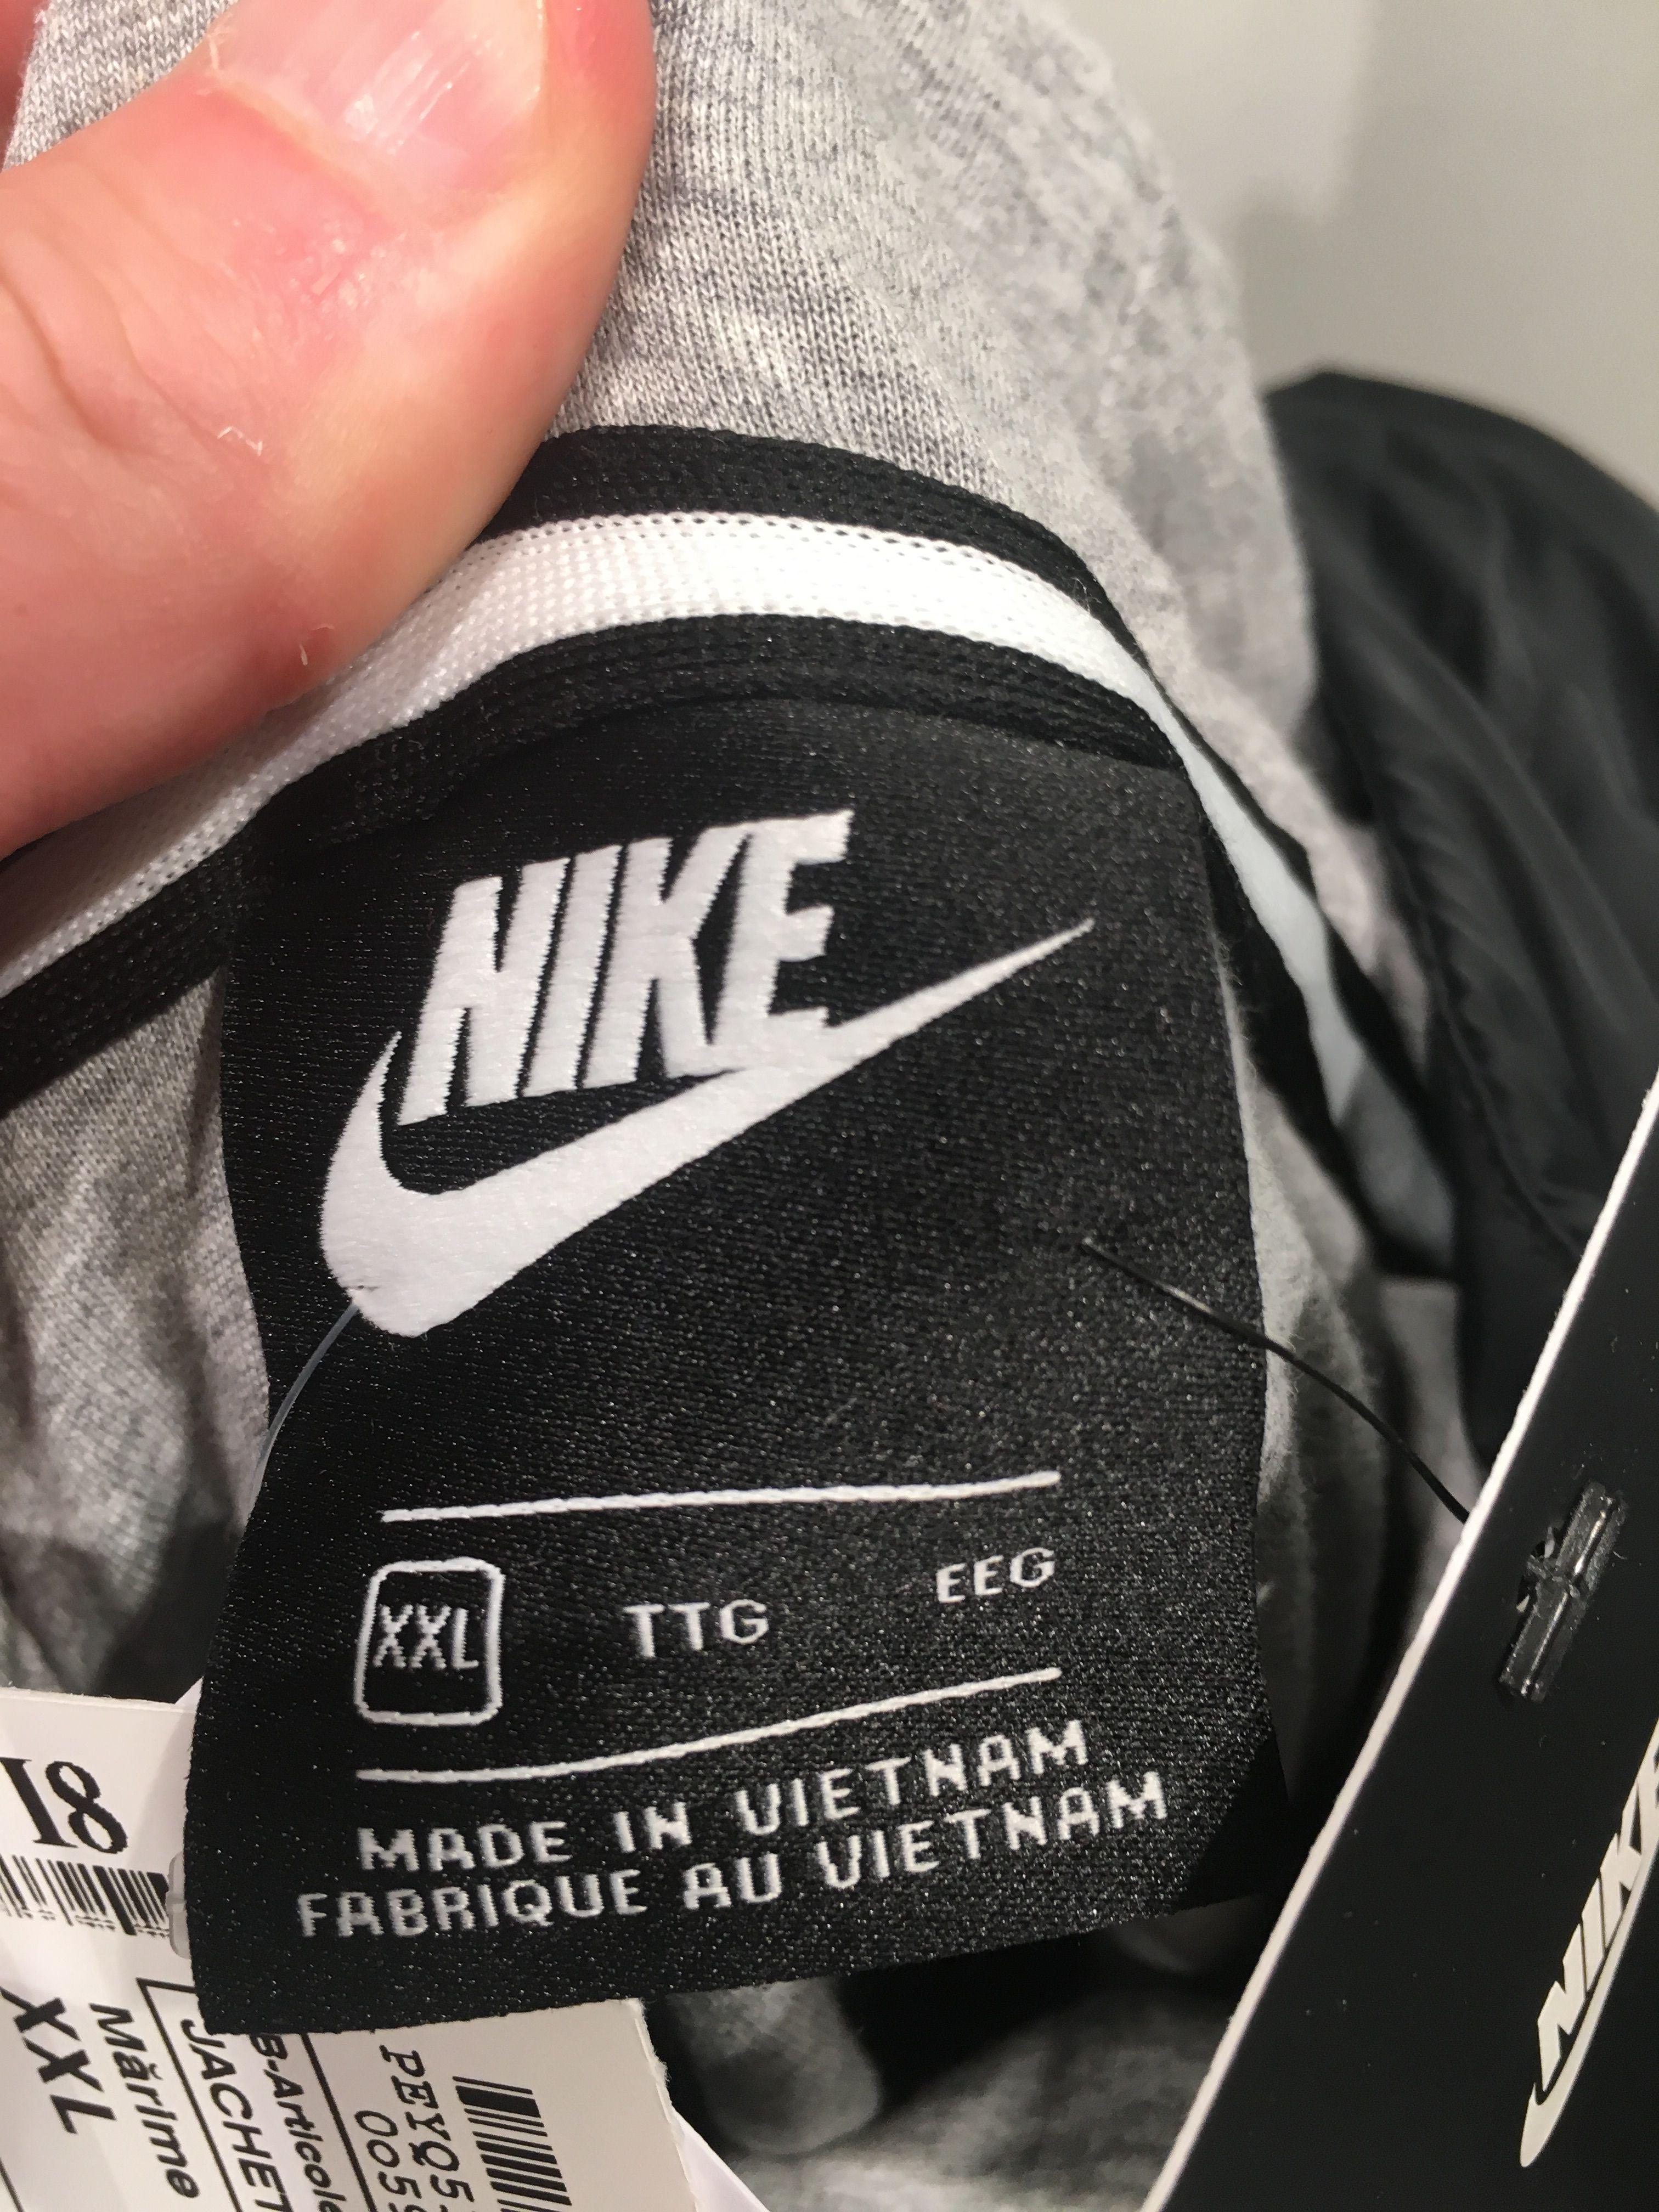 Fake Nike Logo - How to spot fake Nike jacket - Fake vs Original